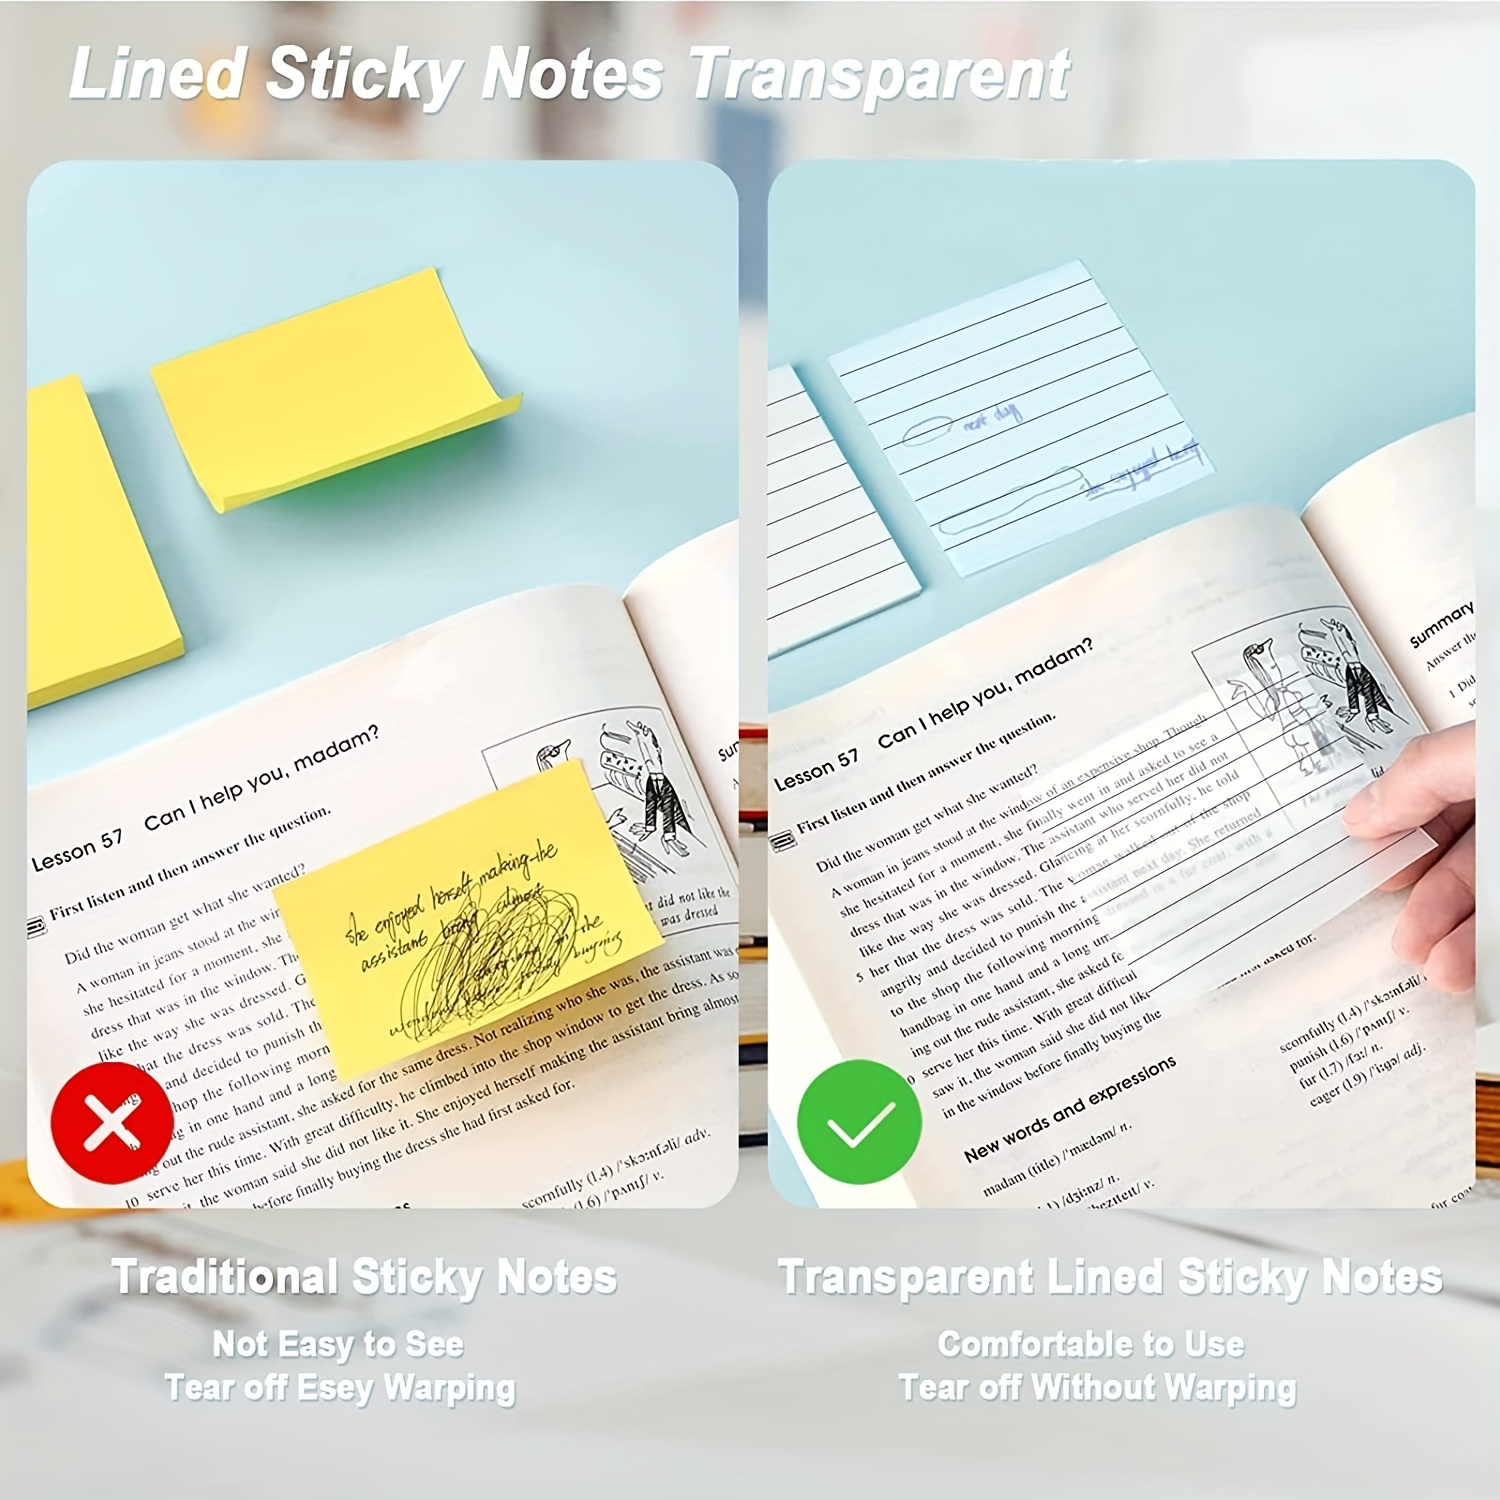 Translucent Sticky Notes - 3x3